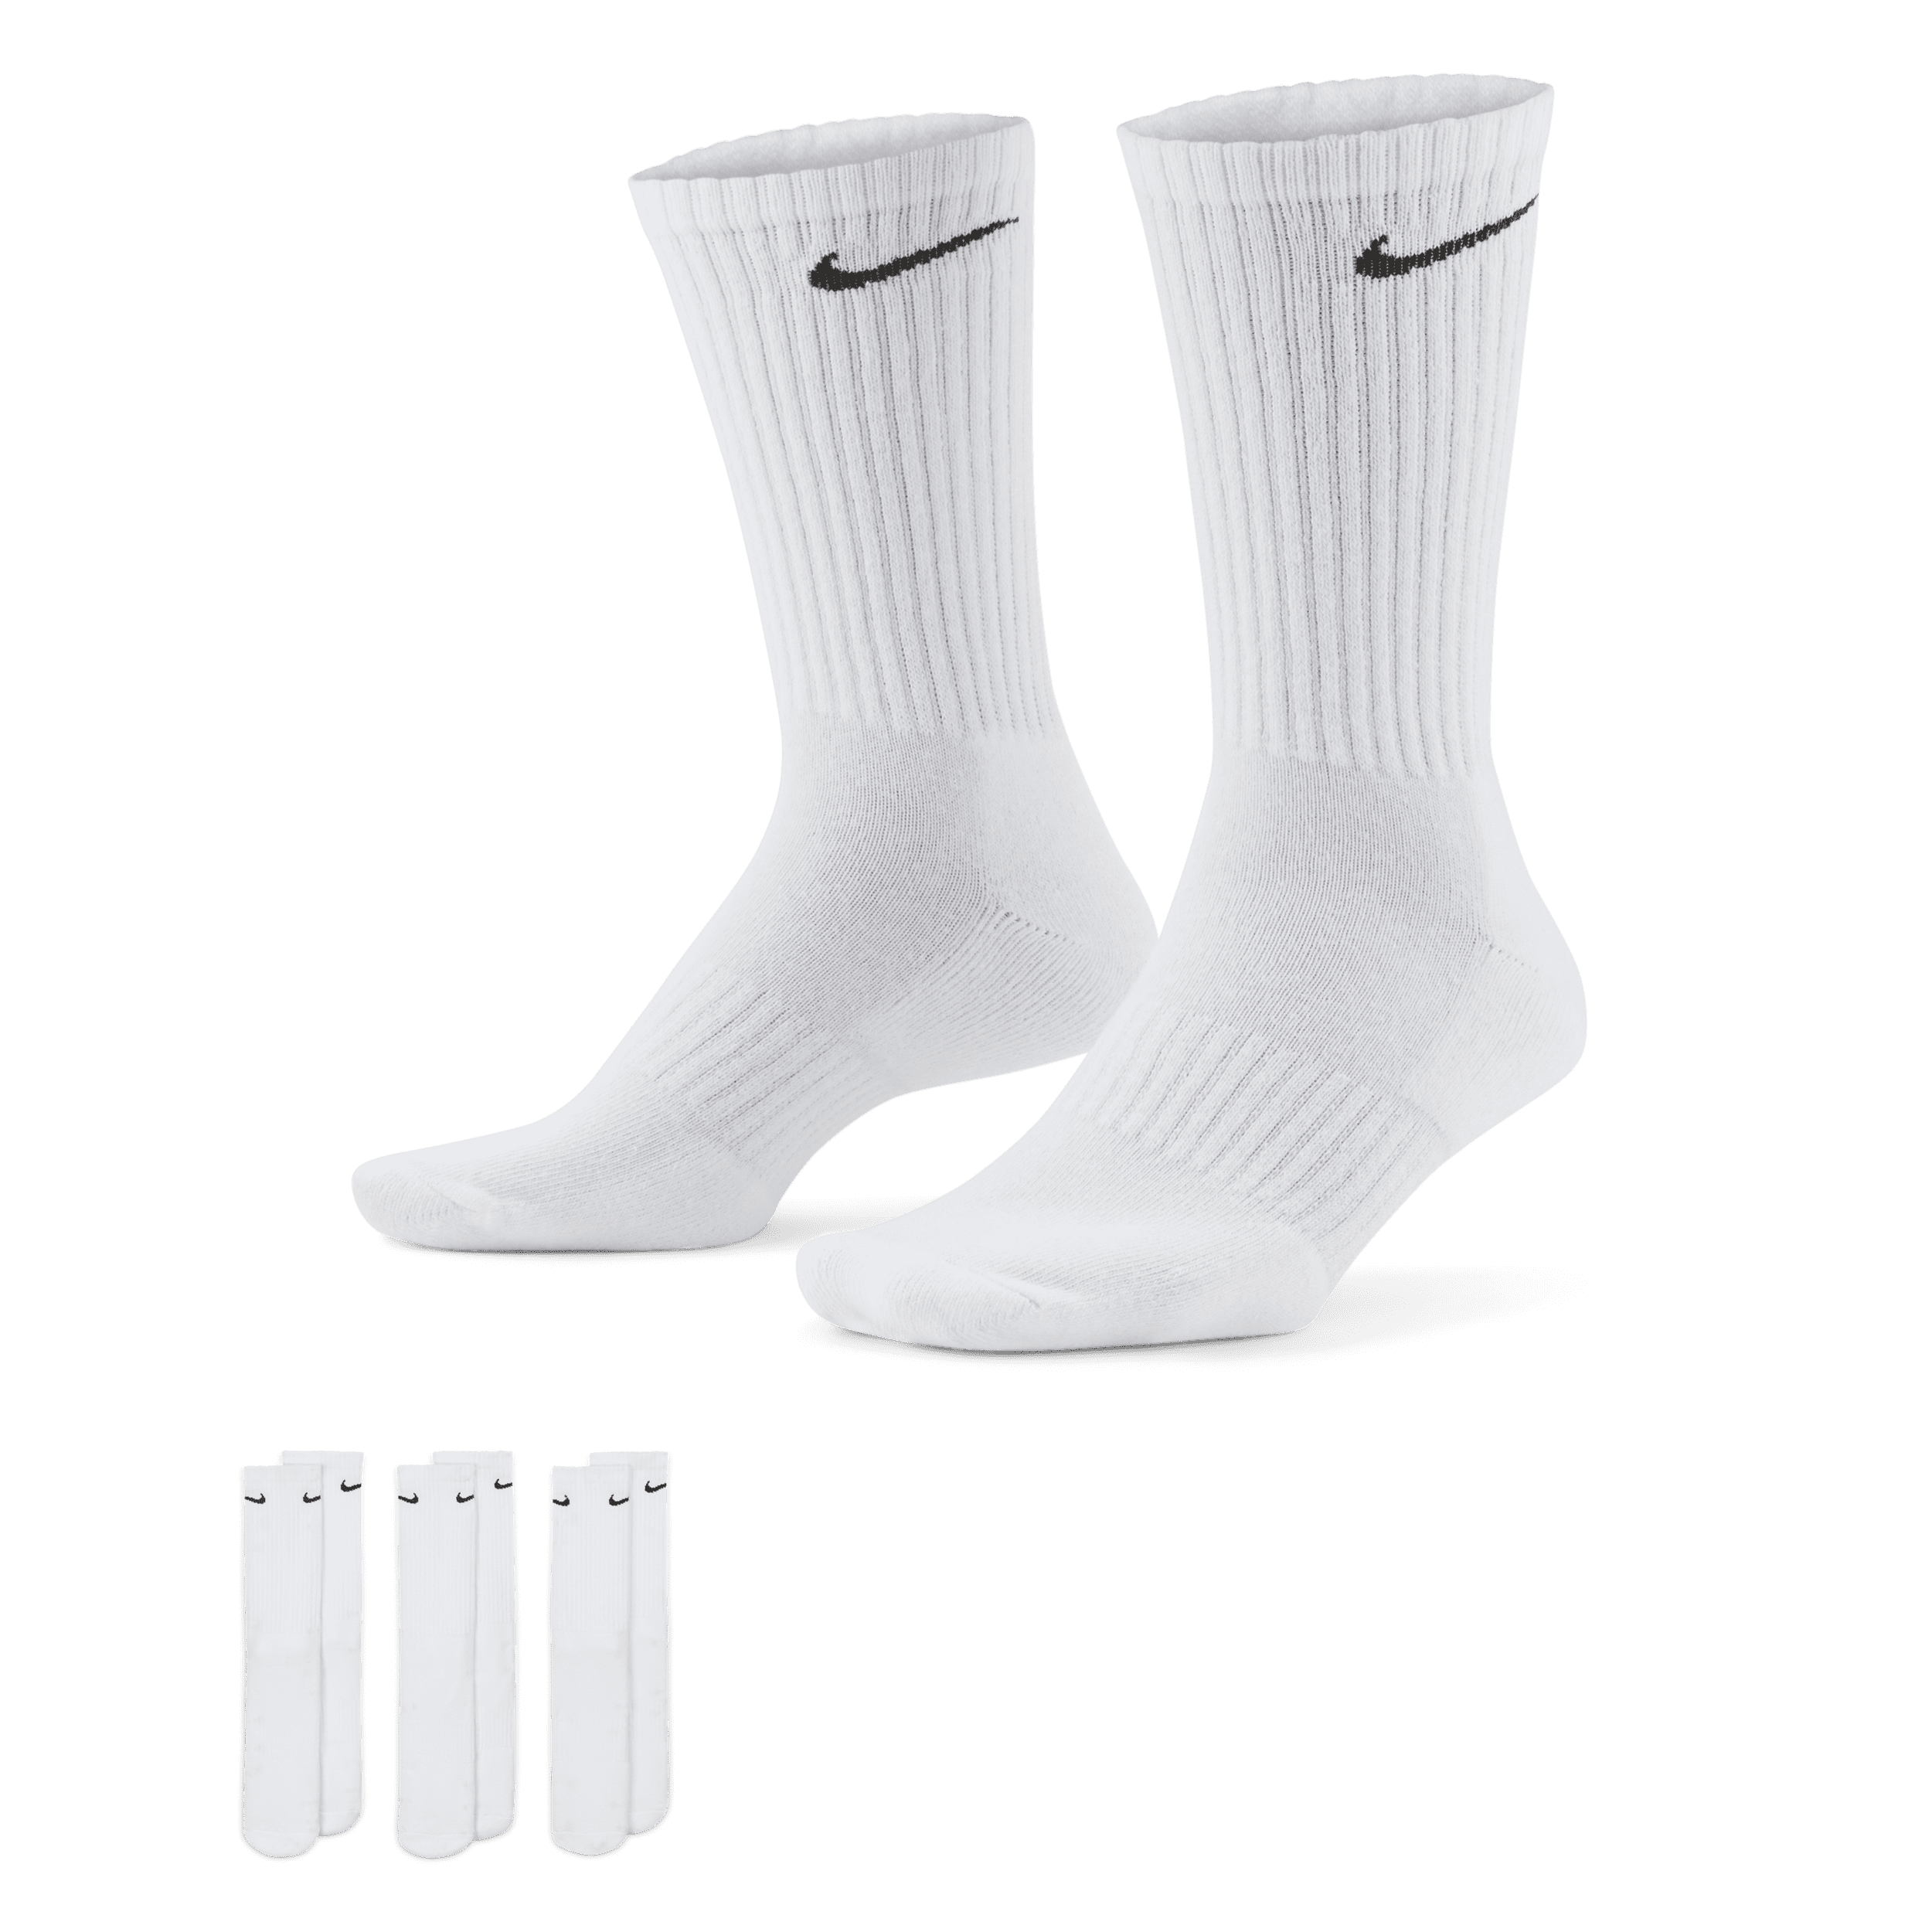 Calze da training Nike Everyday Cushioned di media lunghezza (3 paia) - Bianco